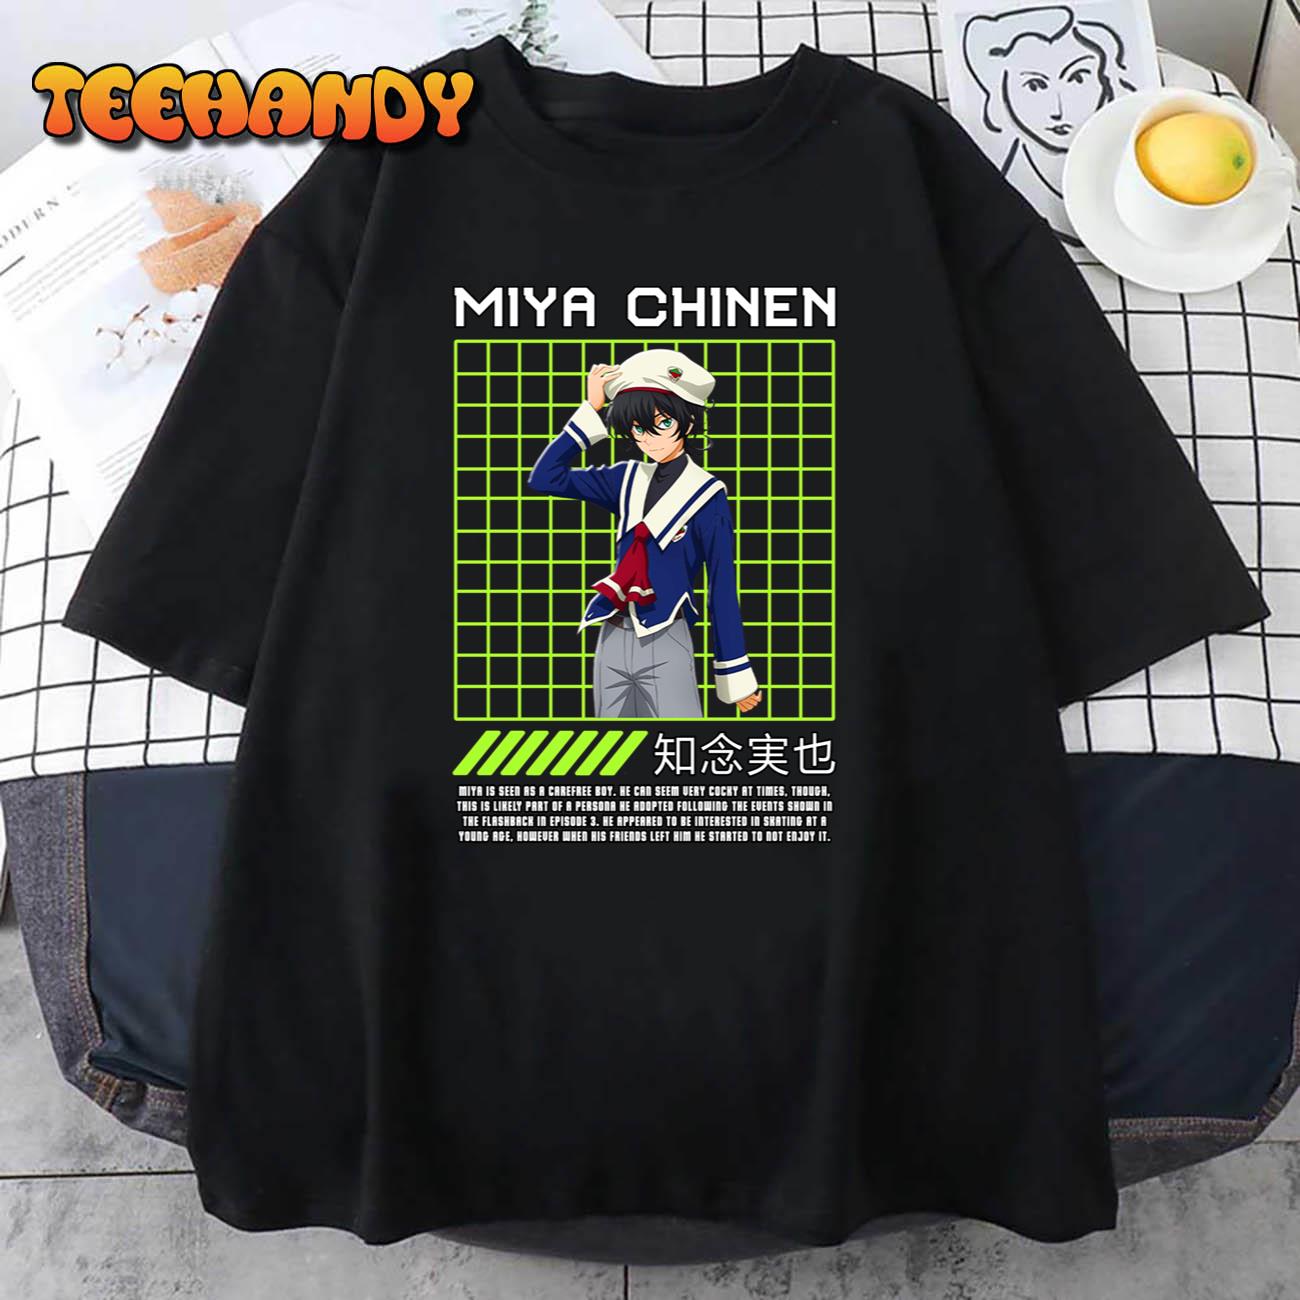 MIYA CHINEN Unisex T Shirt img2 C12